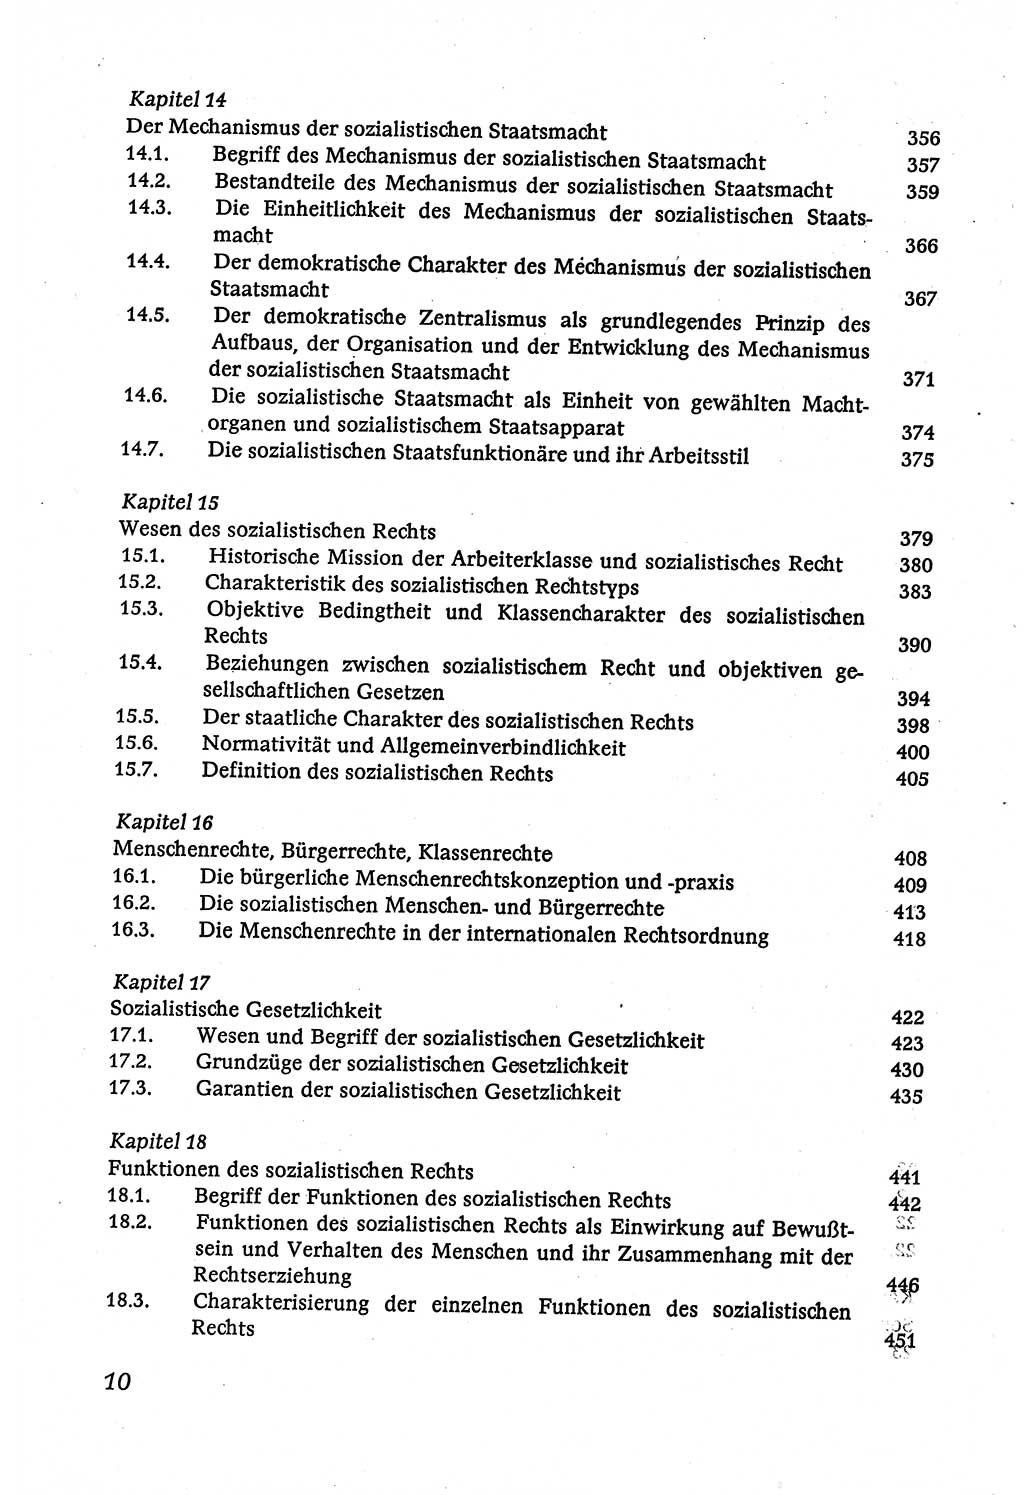 Marxistisch-leninistische (ML) Staats- und Rechtstheorie [Deutsche Demokratische Republik (DDR)], Lehrbuch 1980, Seite 10 (ML St.-R.-Th. DDR Lb. 1980, S. 10)